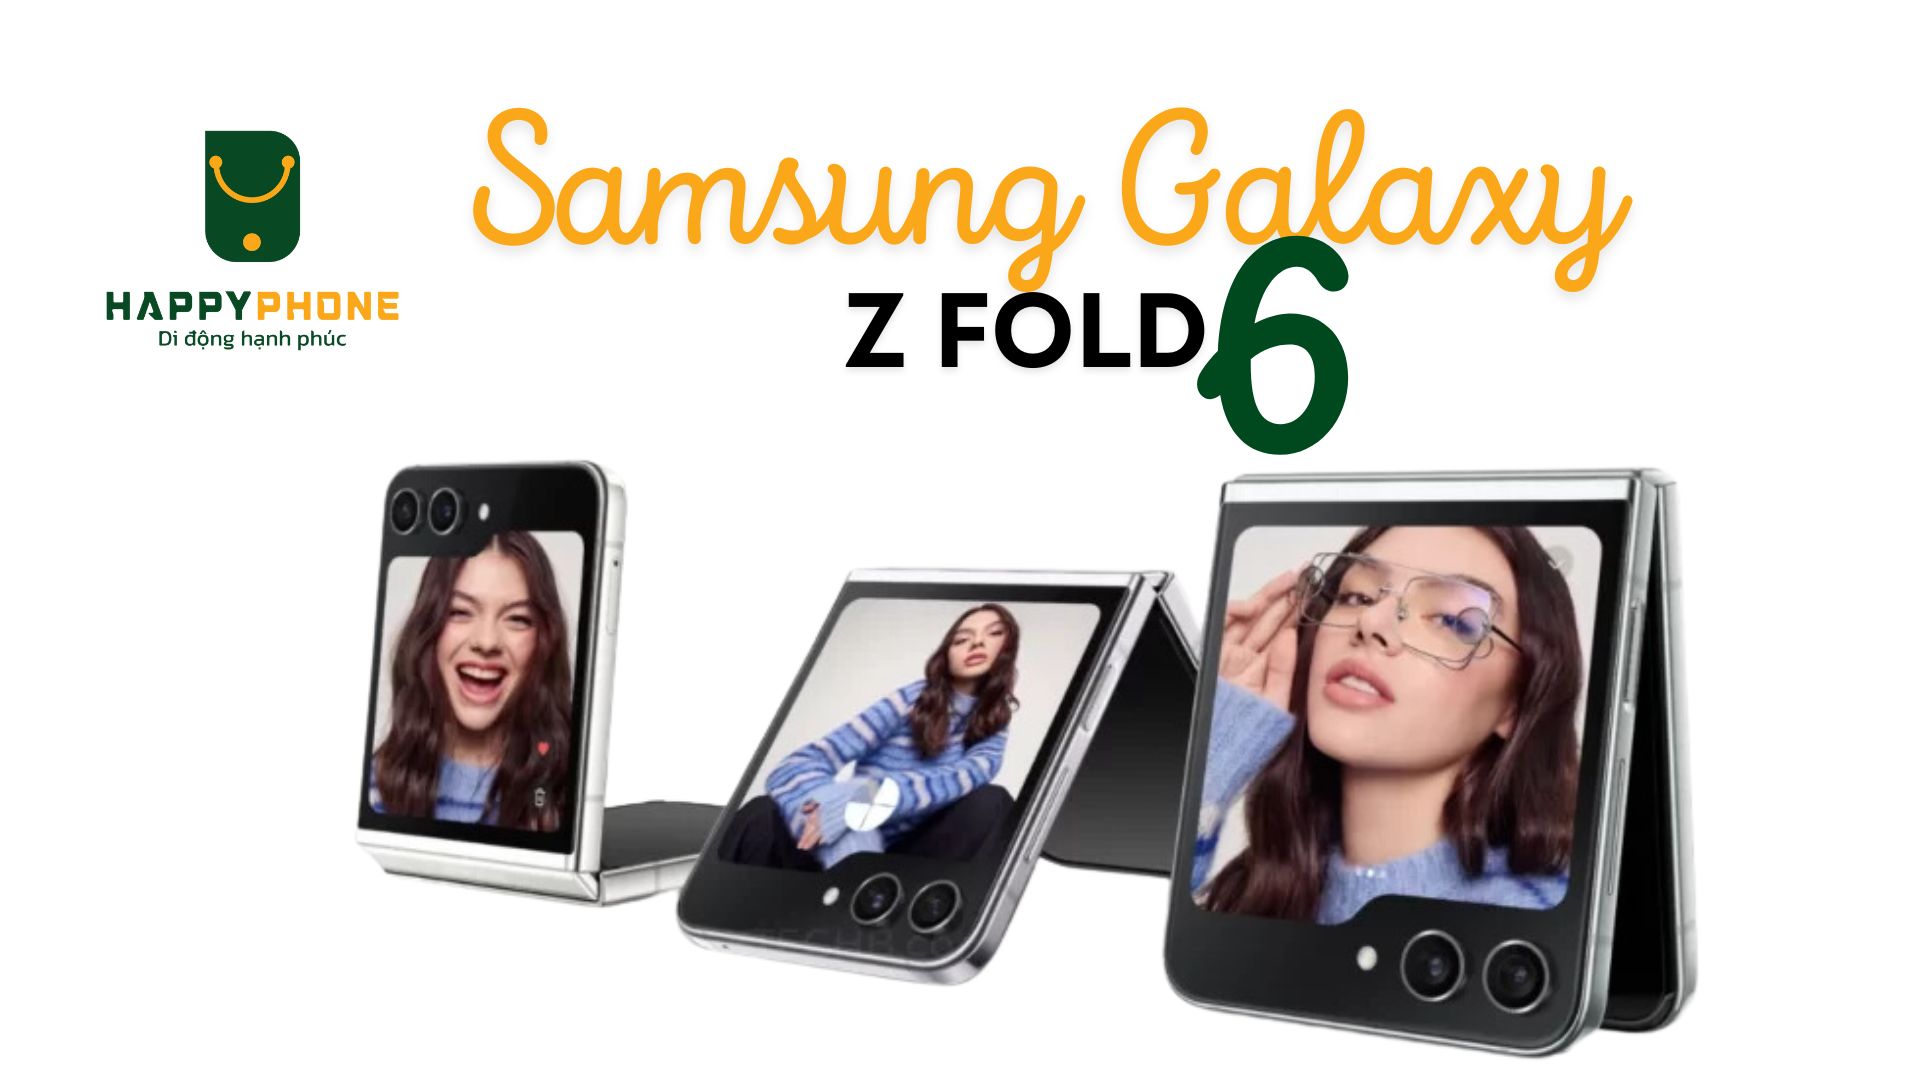 Samsung Galaxy Z Flip 6 có màn hình phụ lớn hơn